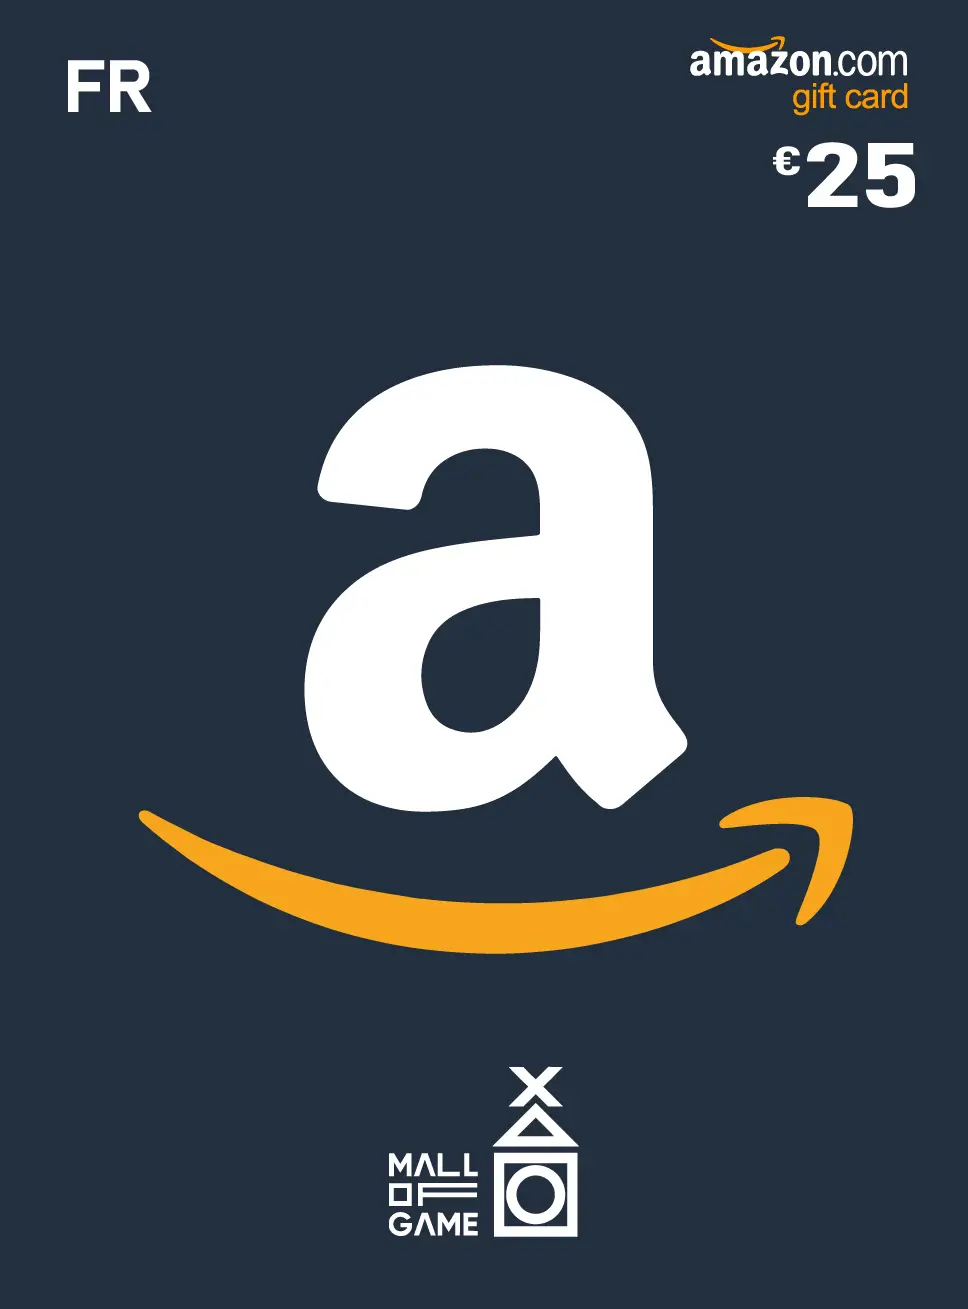 Amazon 25 EUR FR